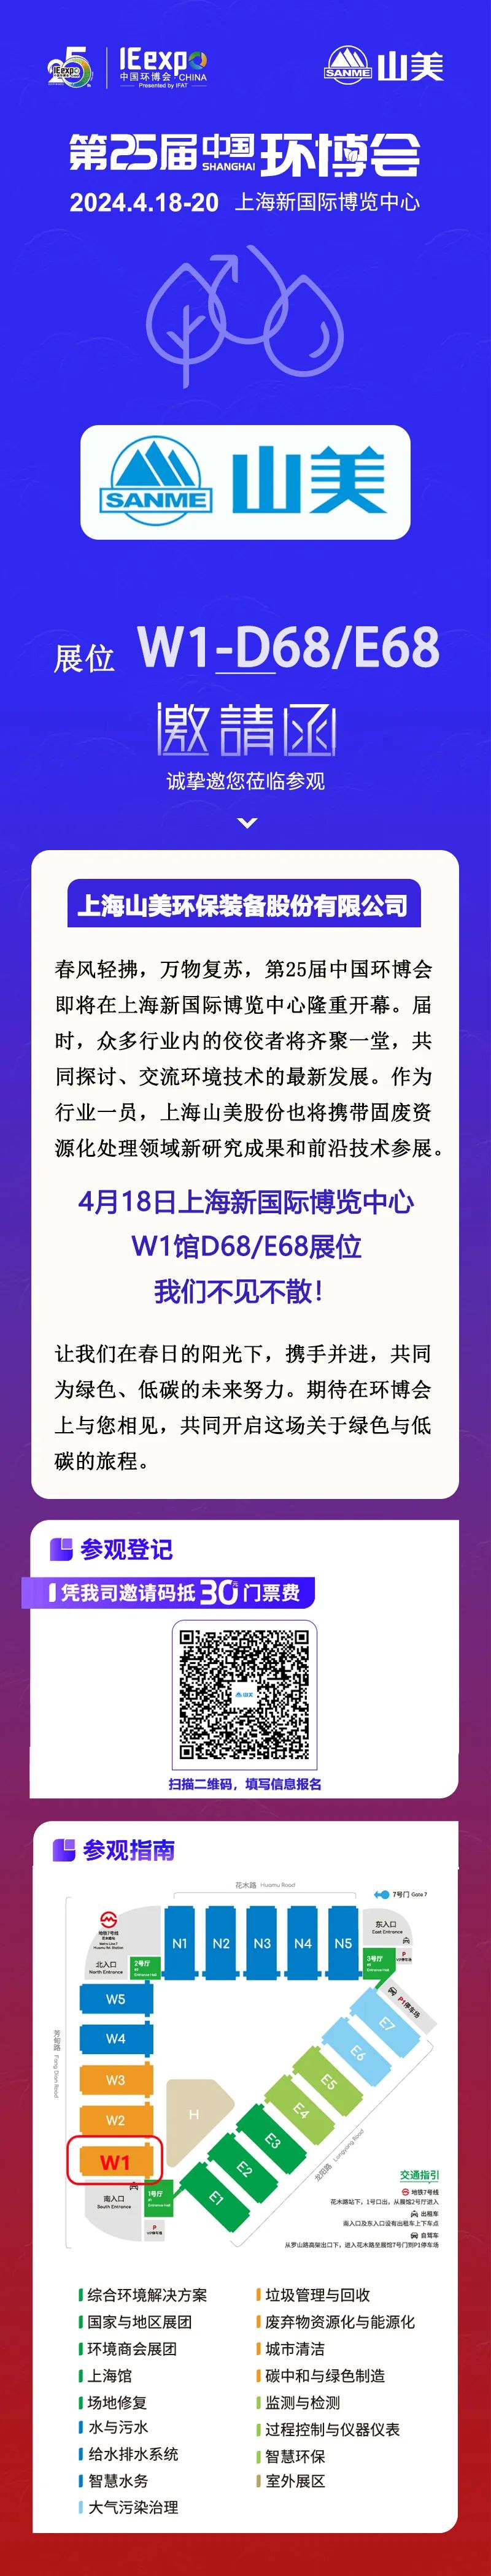 【邀請函】上海918博天堂股份邀您相約中國環博展